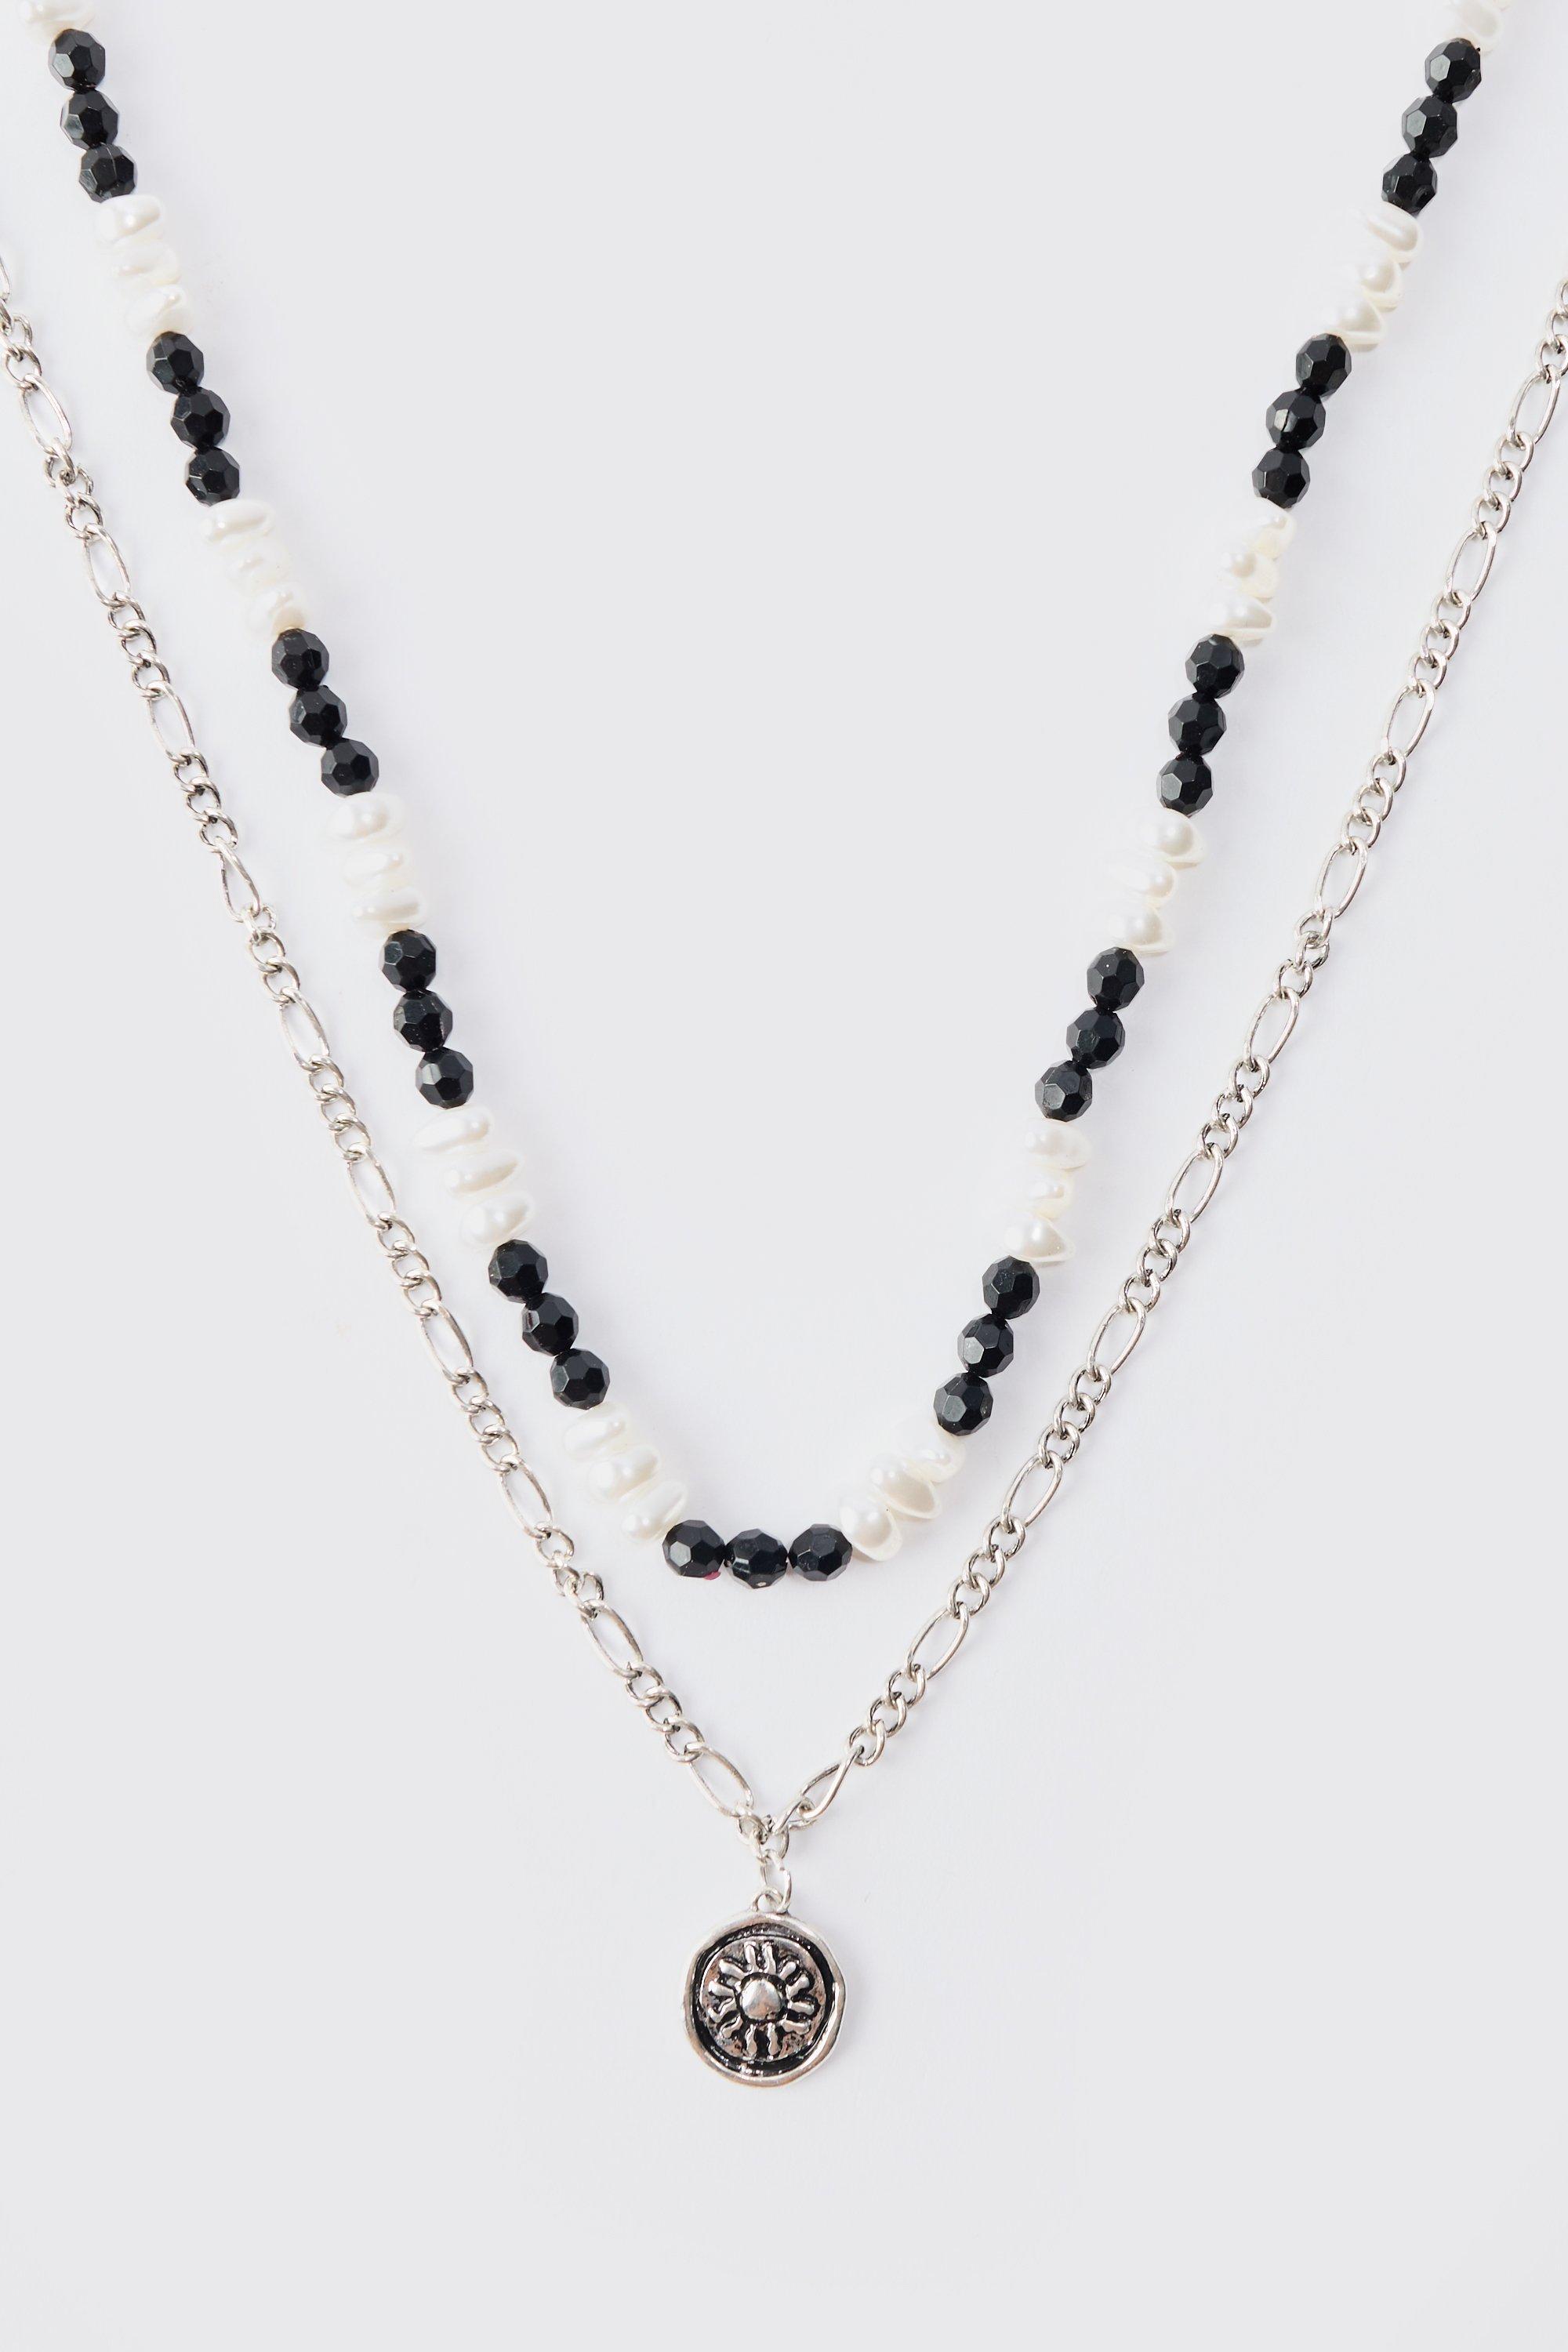 collier à pendentif en chaîne et perle homme - argent - one size, argent